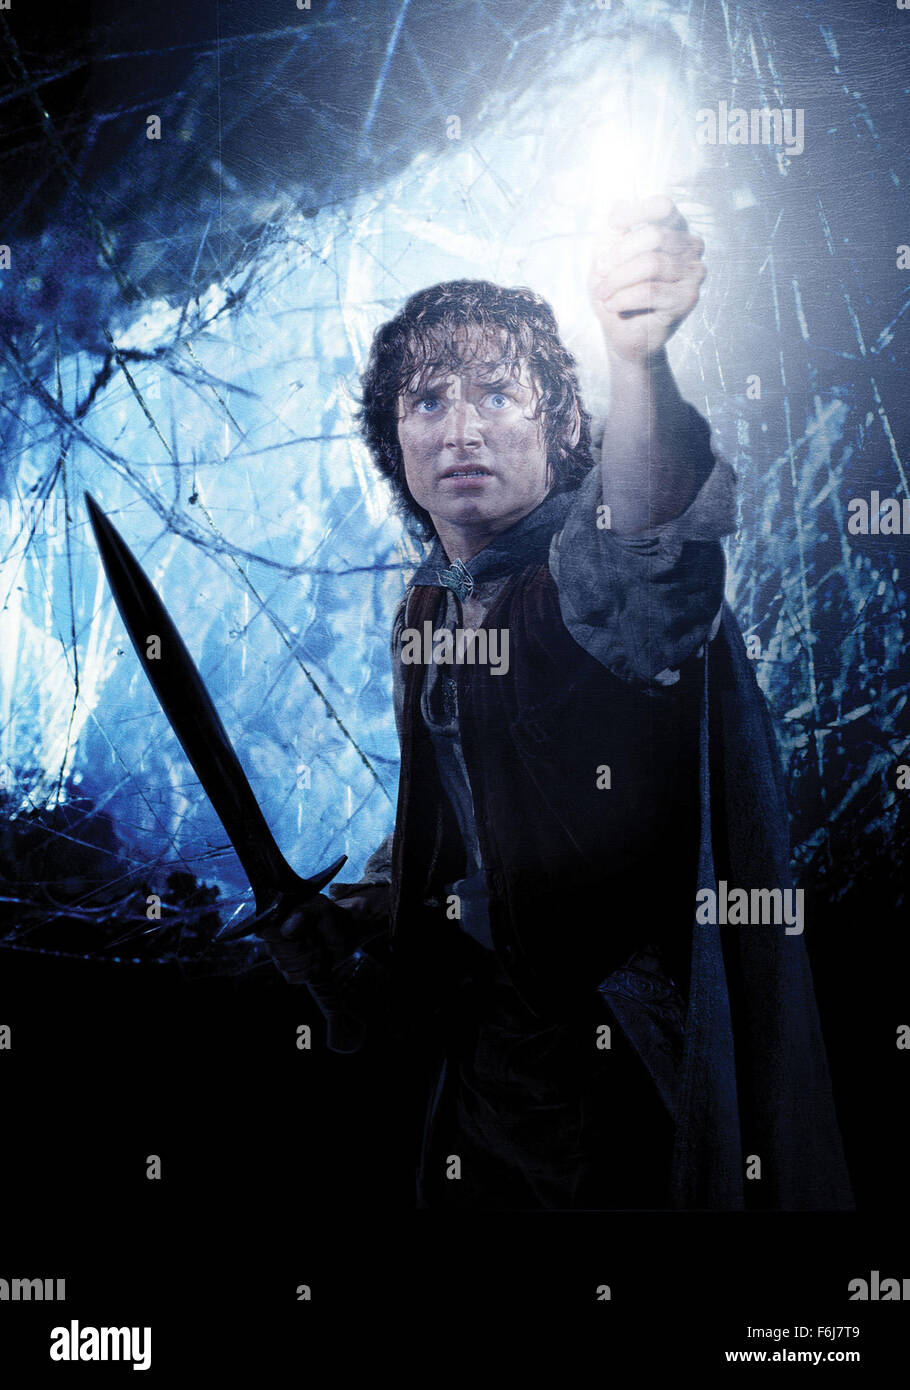 16 Feb, 2003; Hollywood, CA, EE.UU.; imagen de póster para el director Peter Jackson "El Señor de los Anillos: El Retorno del Rey" protagonizada por Elijah Wood como Frodo. Foto de stock